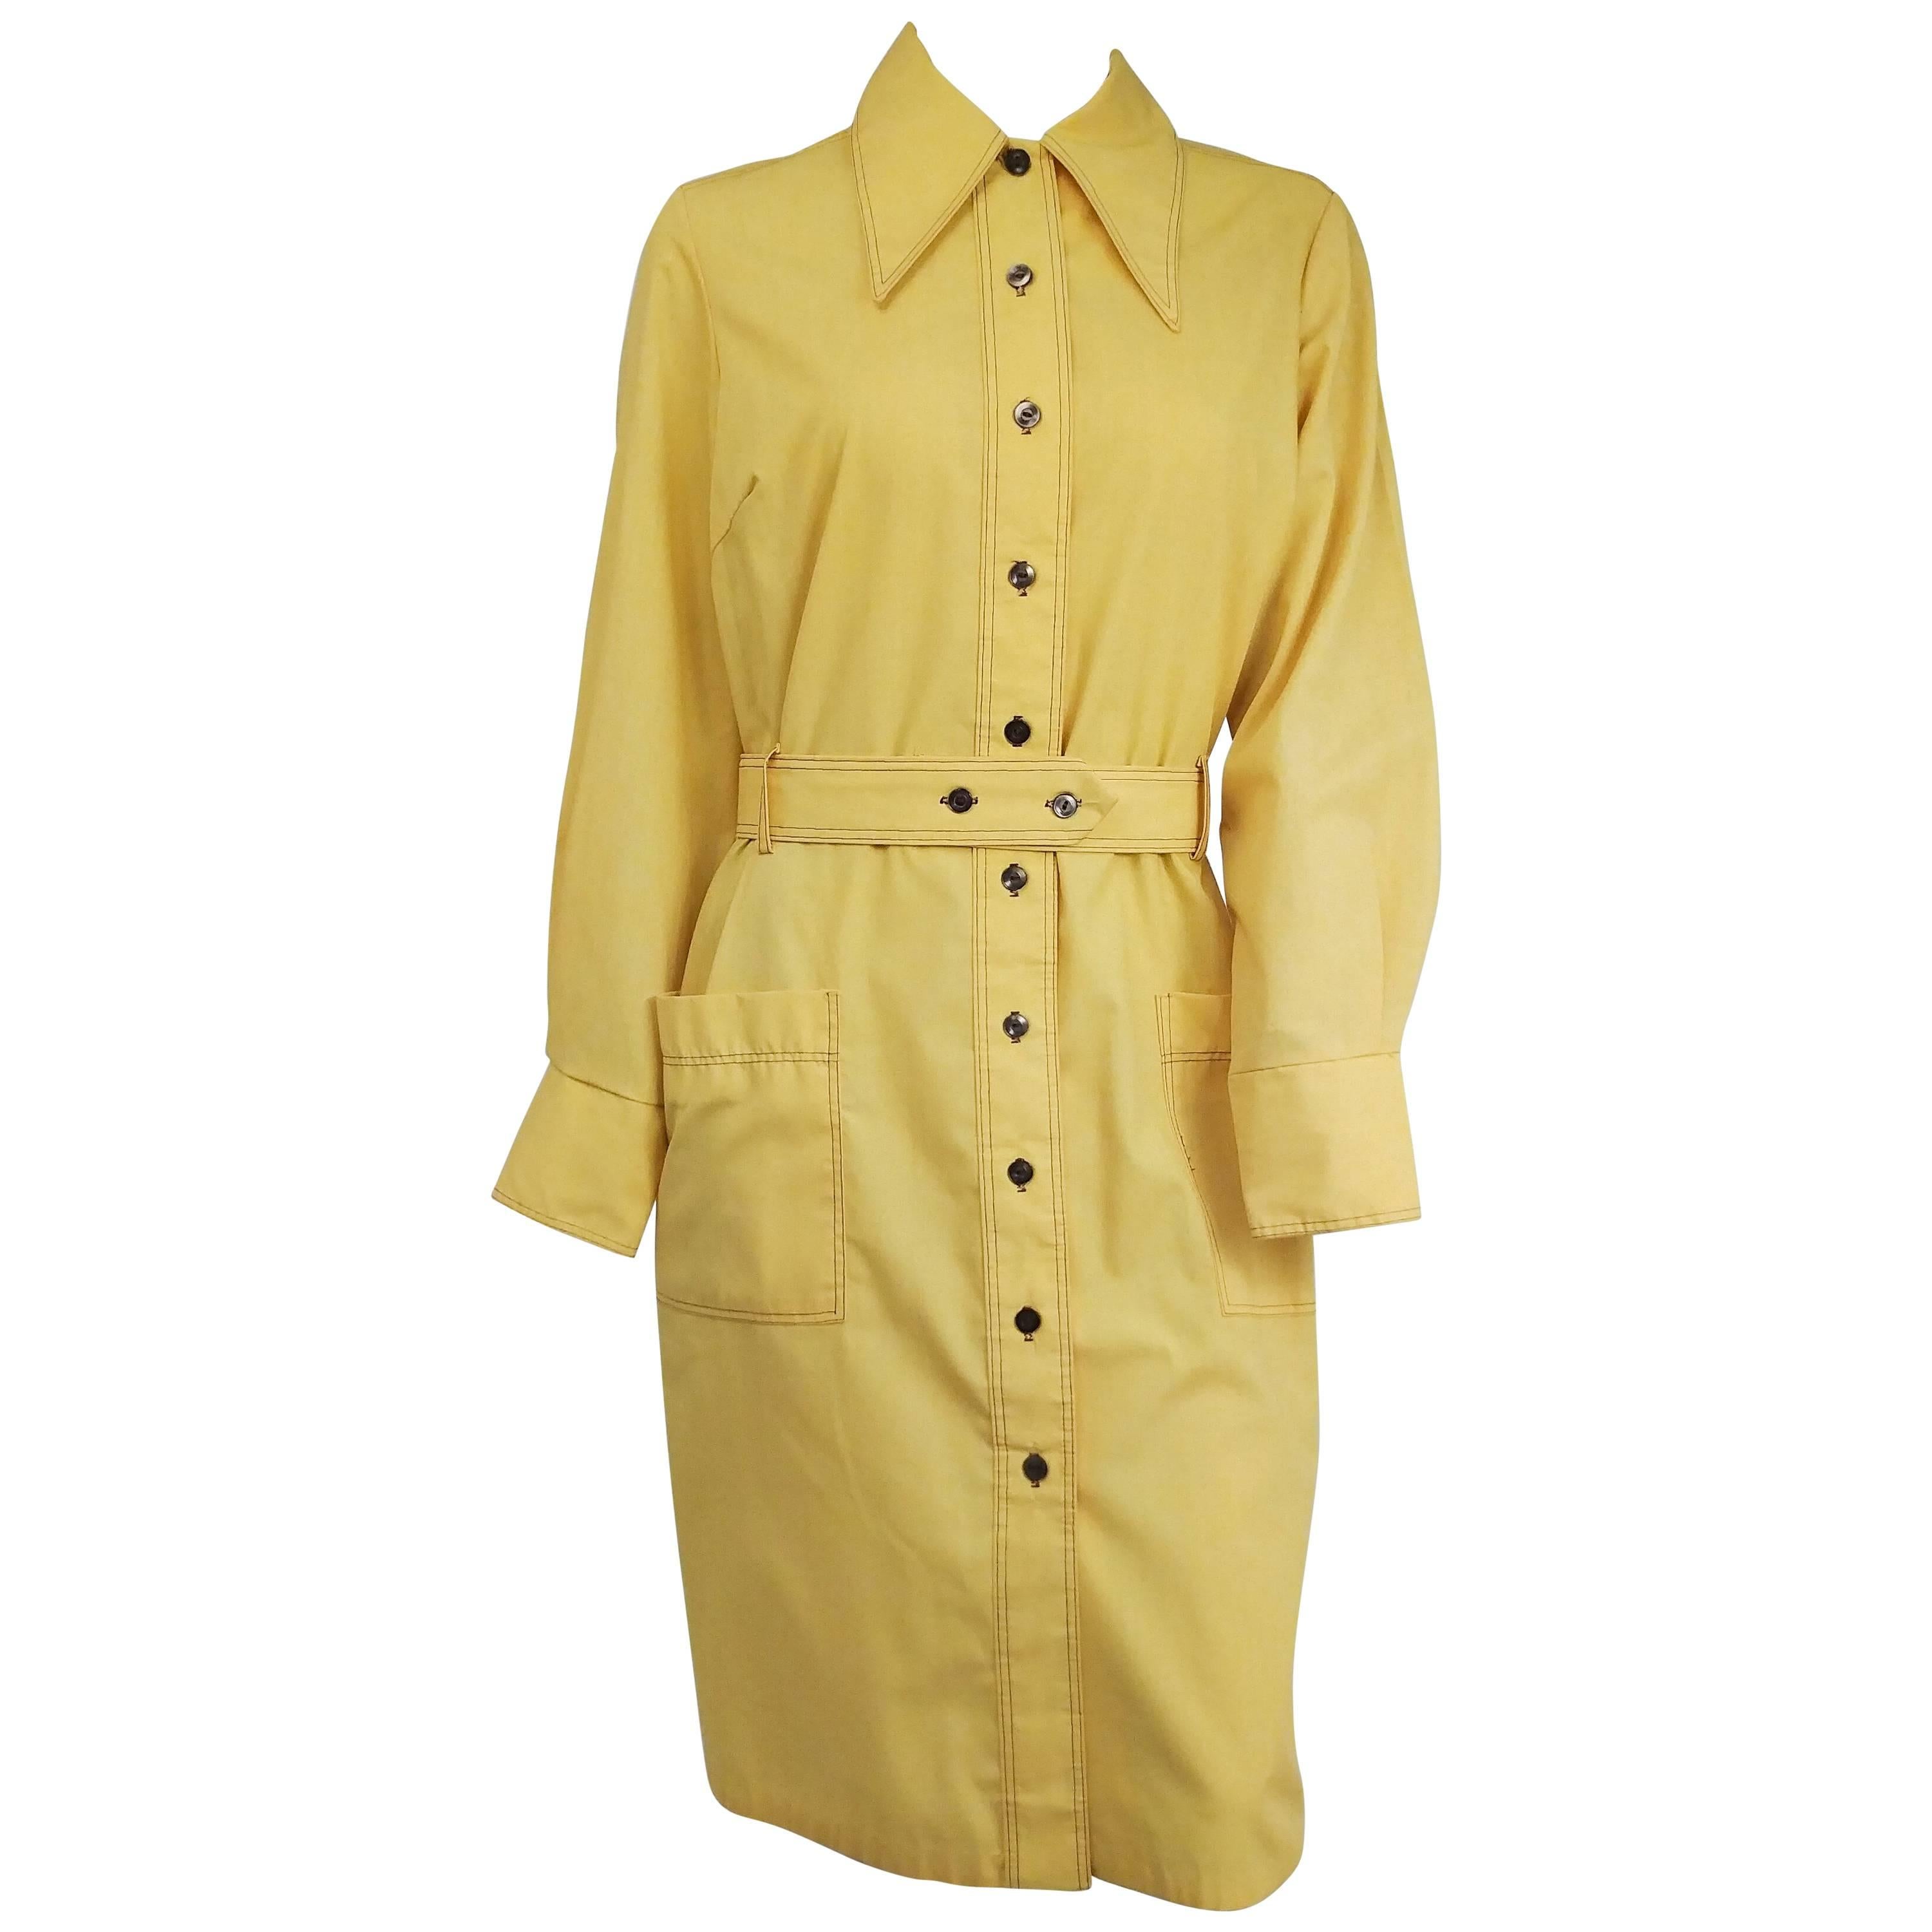 1970s Yellow Cotton Shirtdress